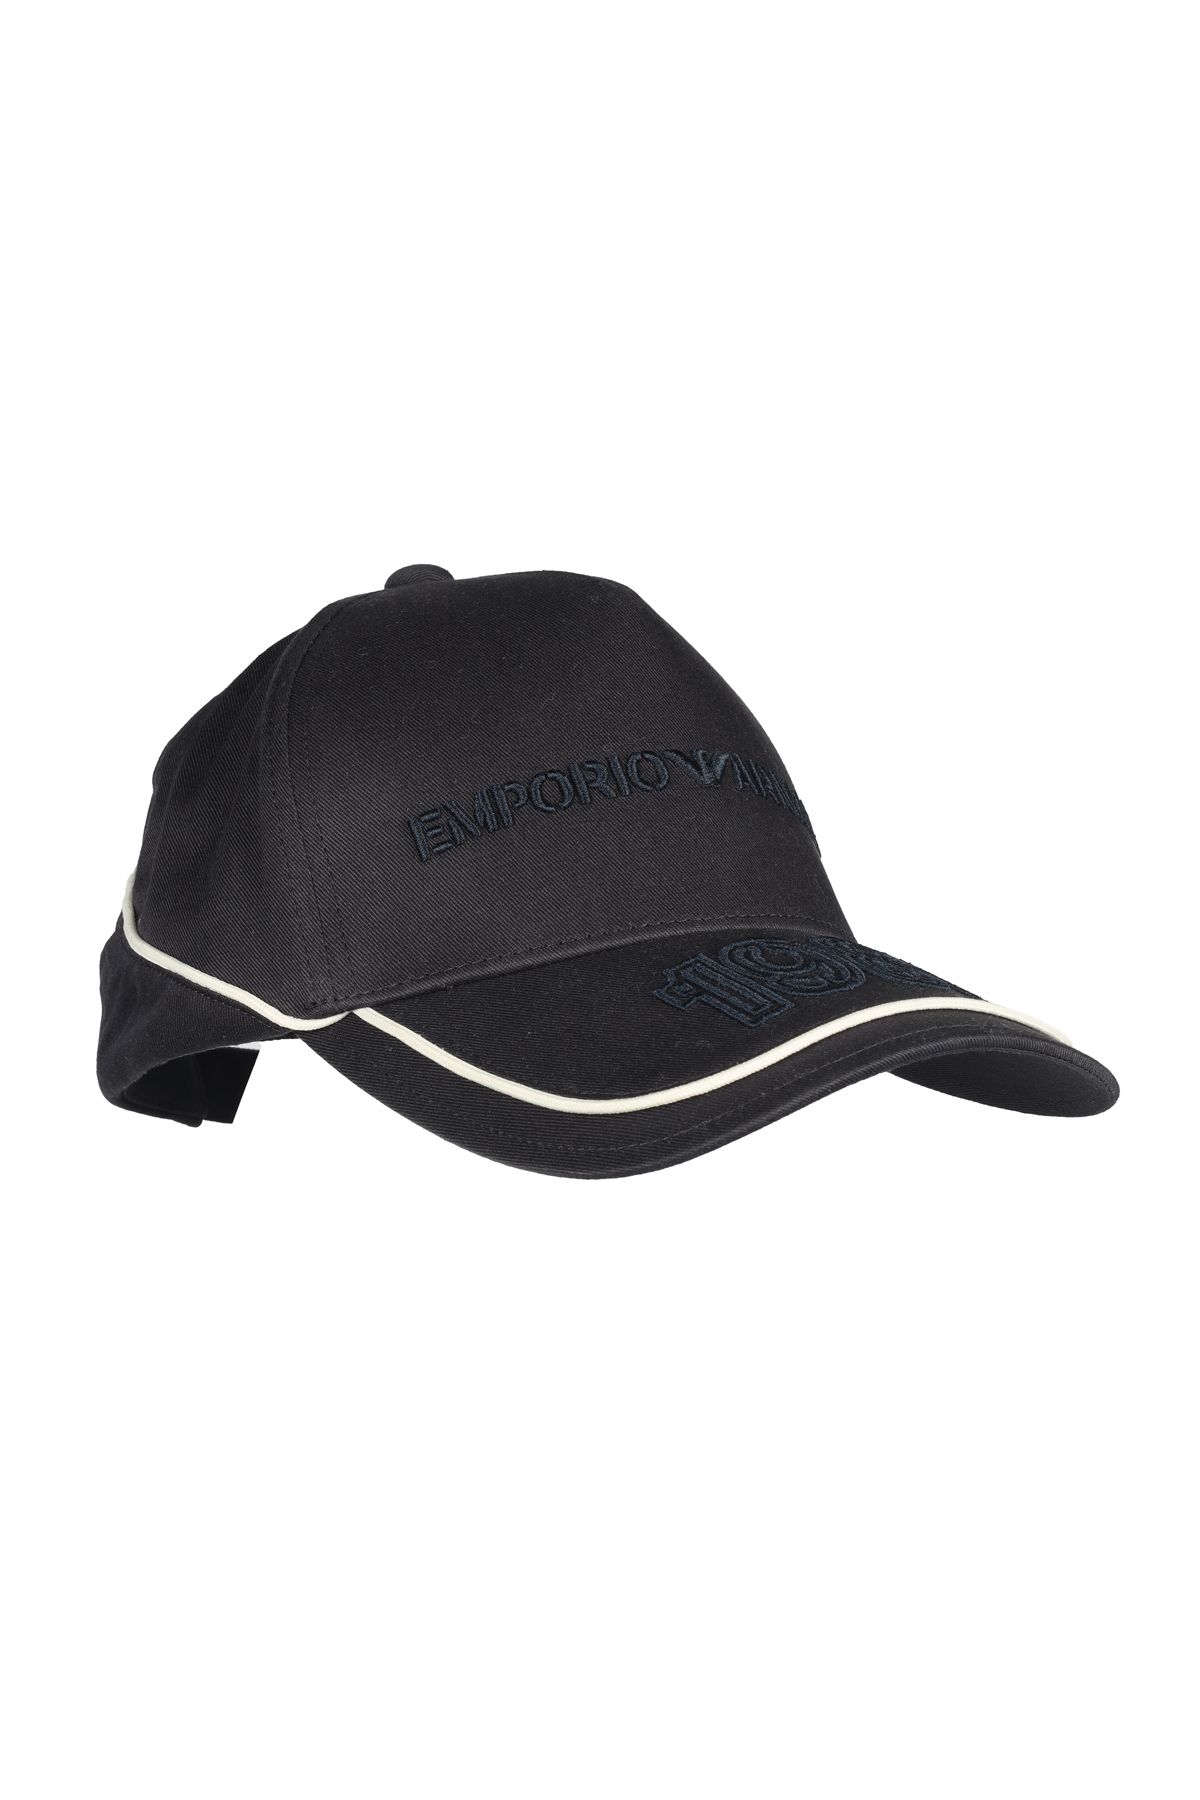 Emporio Armani Erkek Logolu Ayarlanabilir Spor Tasarım Lacivert Spor Şapka 627391 3F561-00035